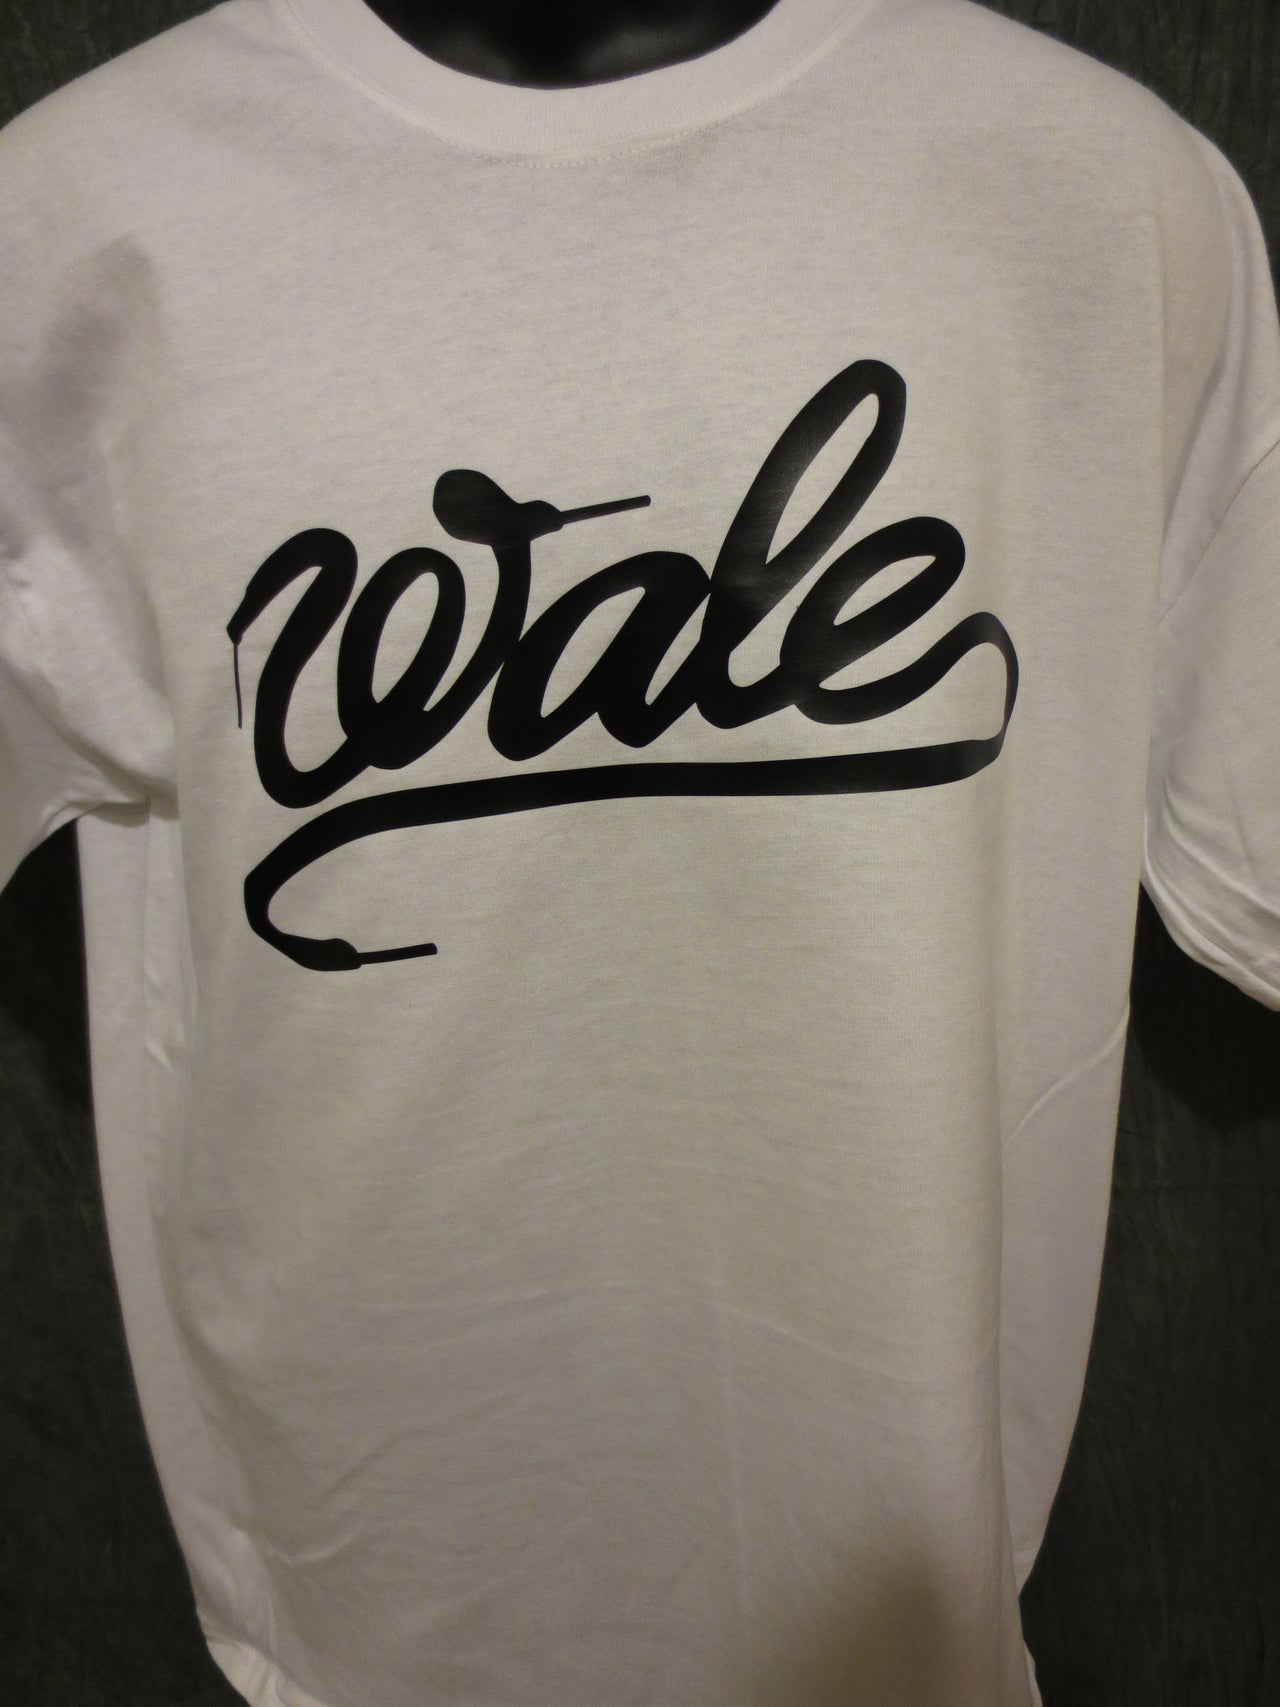 Wale 'Shoelace' Tshirt - TshirtNow.net - 13